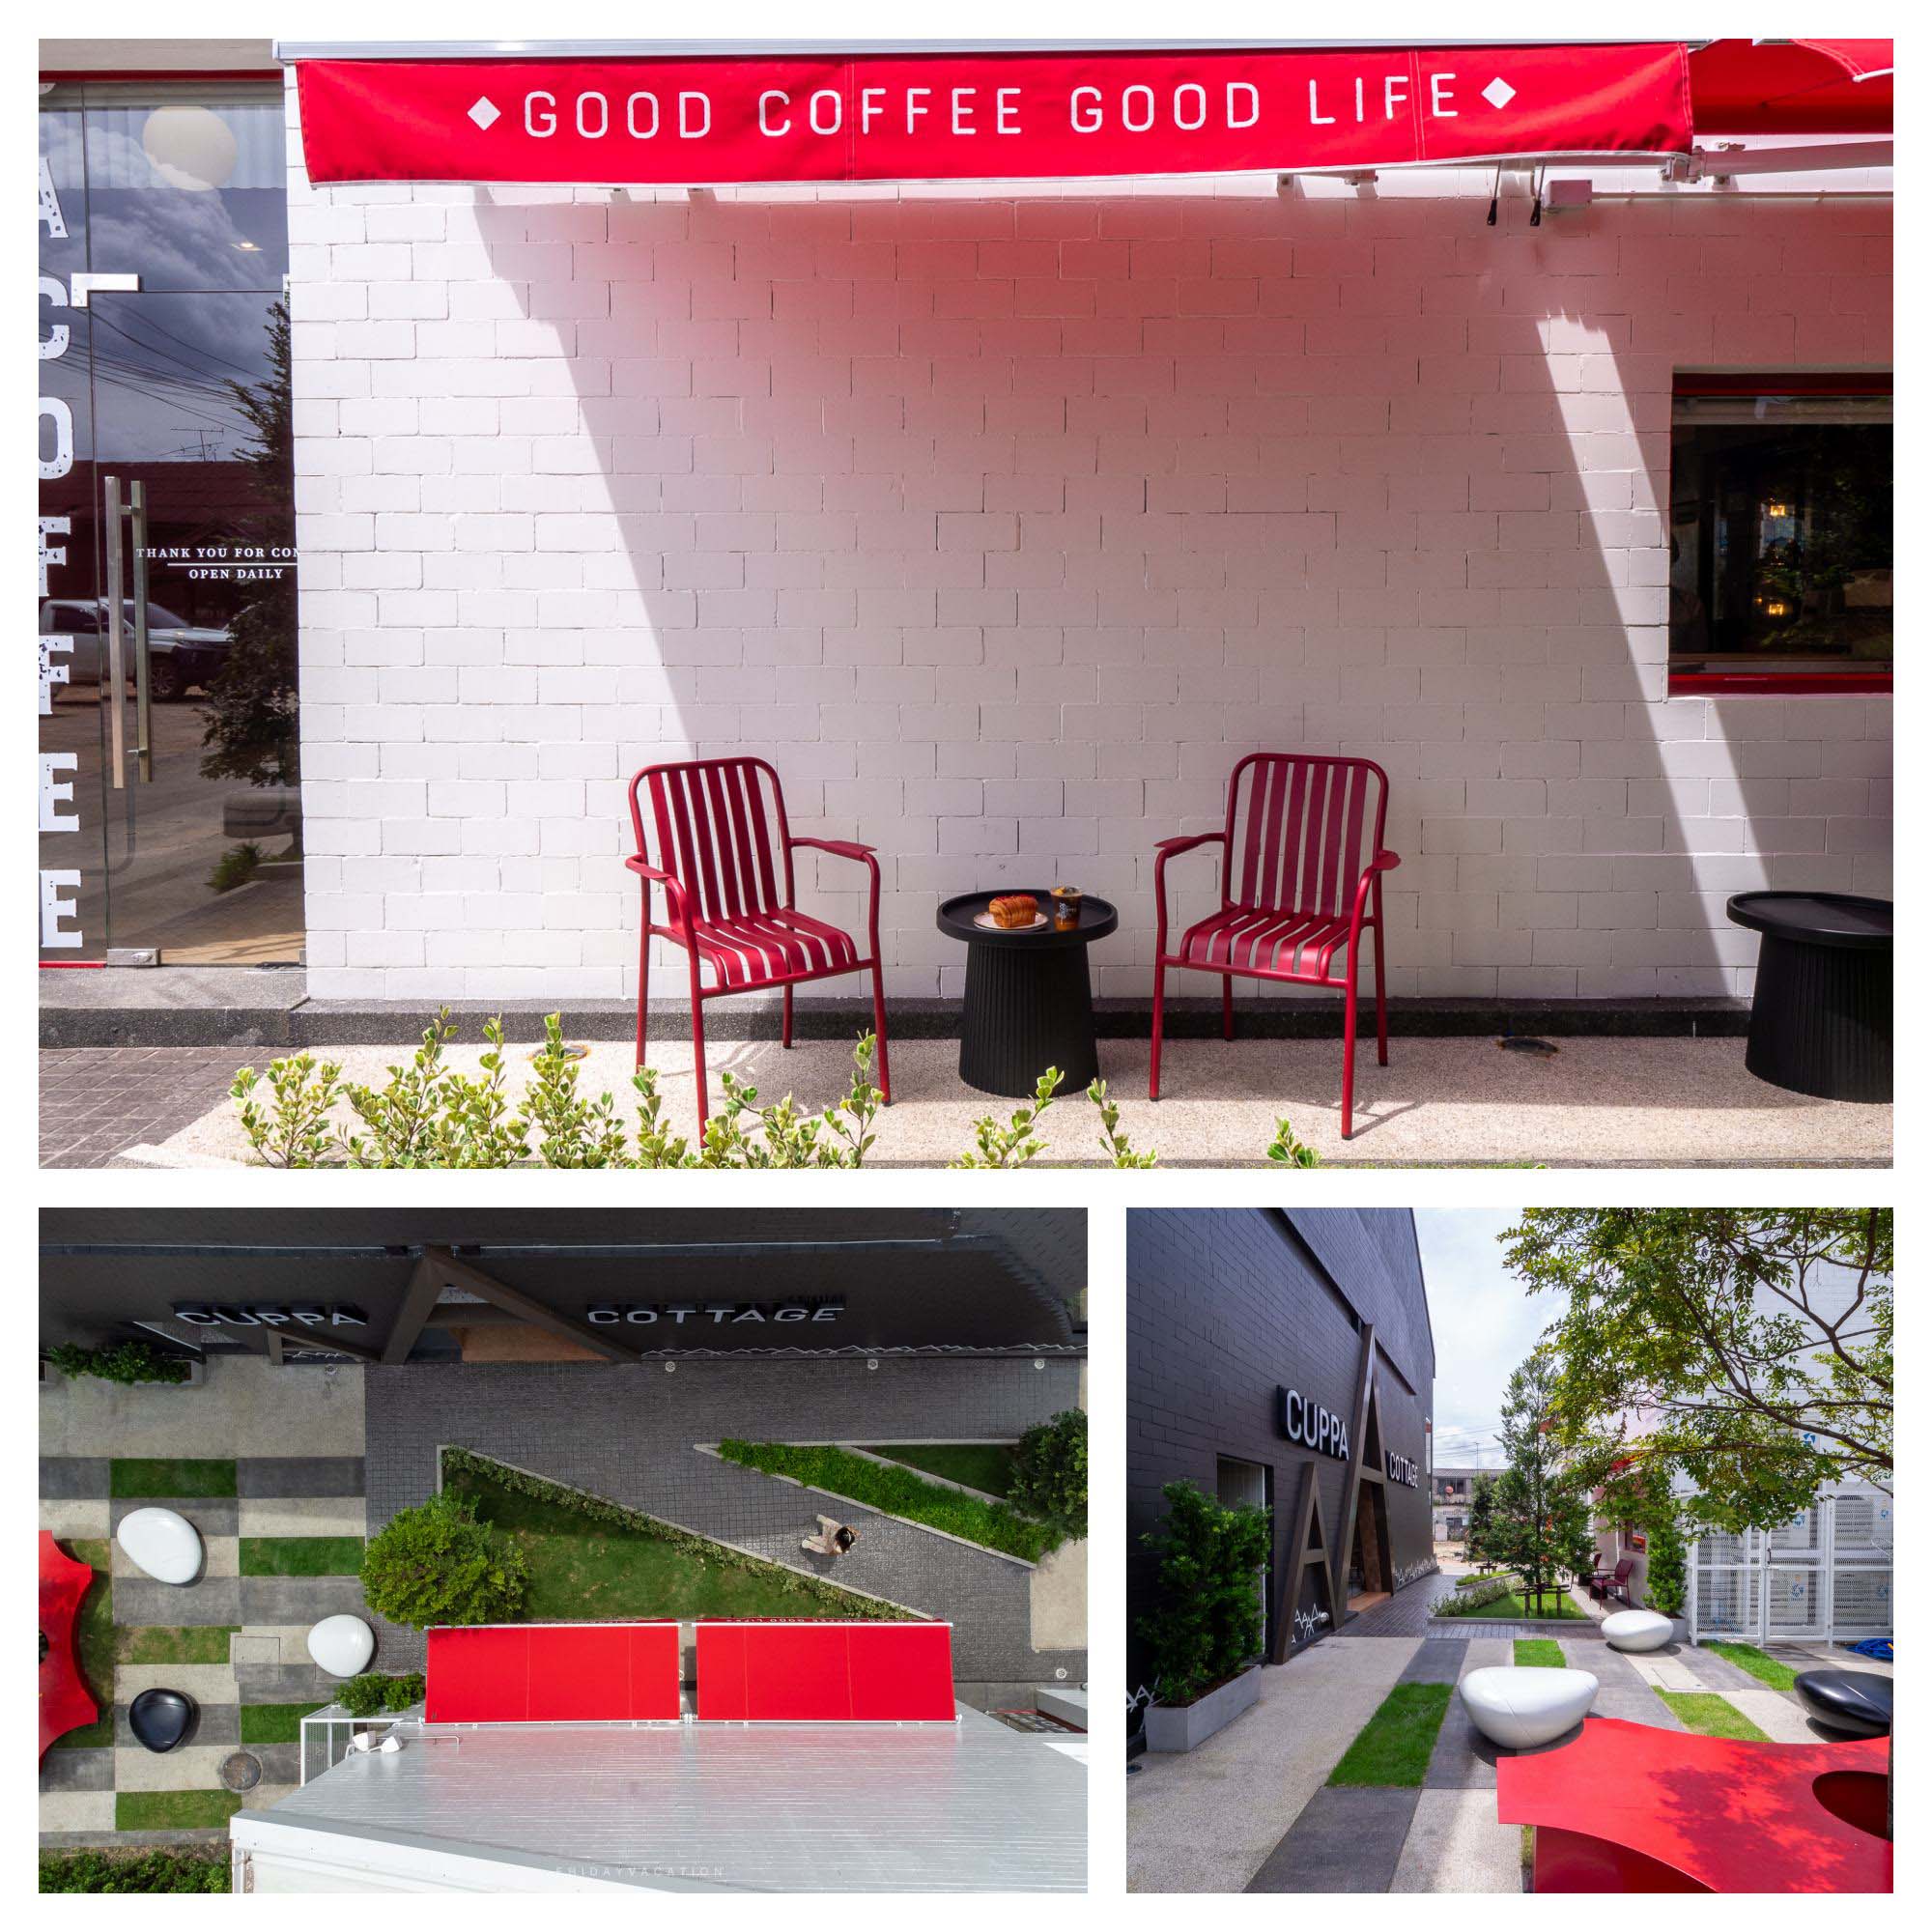 CUPPA COFFEE คาเฟ่สุราษฎร์ เปิดใหม่ ร้านสวย นั่งสบาย มีกาแฟ Specialty และ เบเกอรี่โฮมเมด 